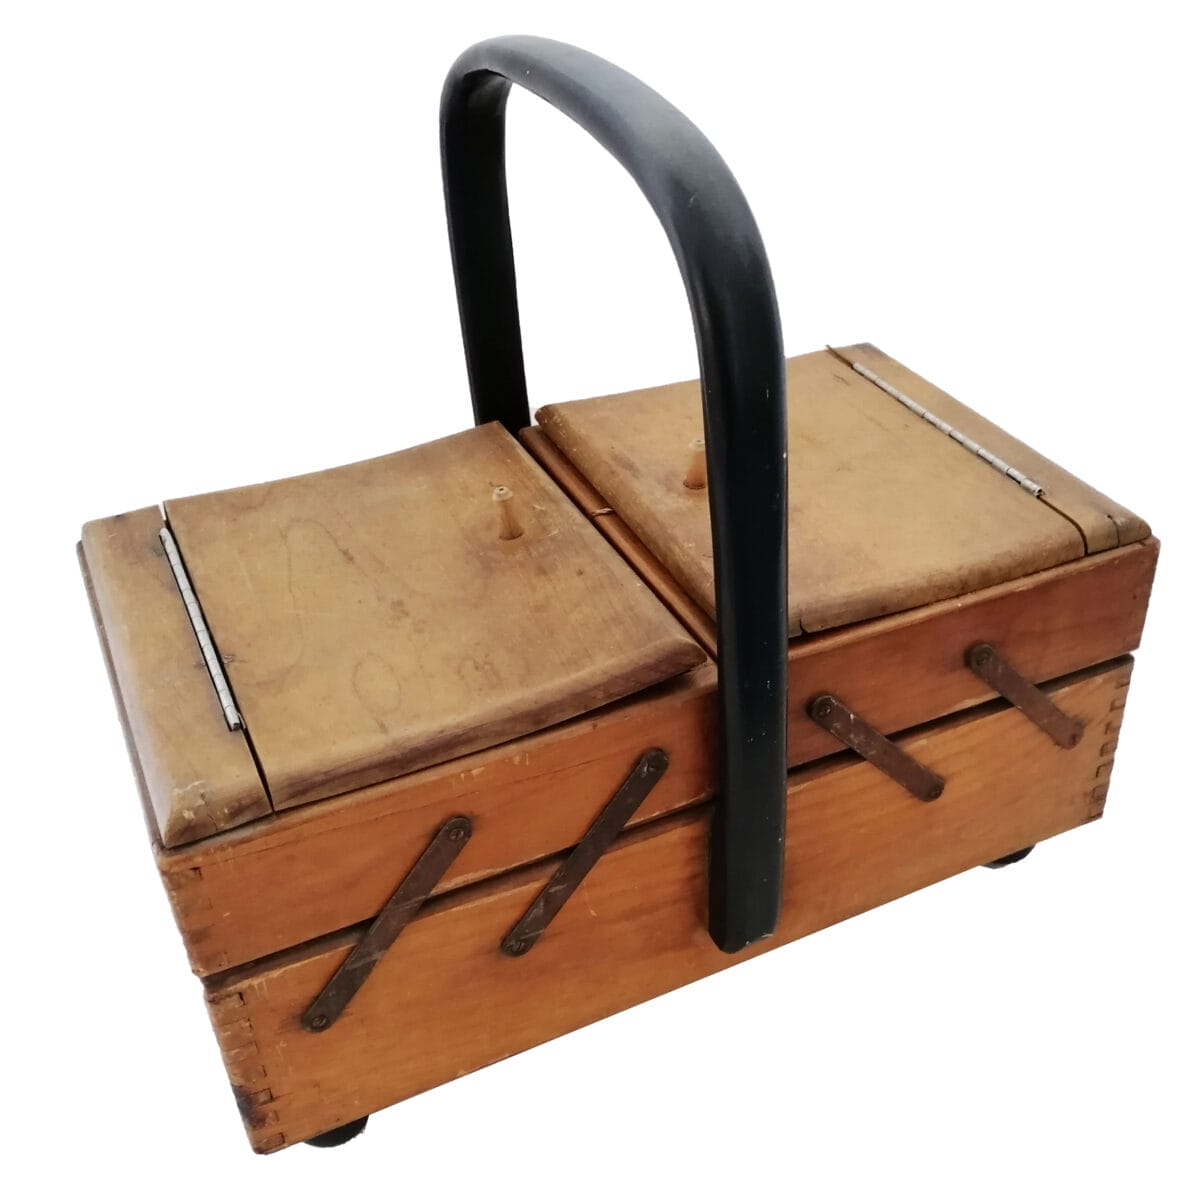 Scatola di legno Sarta - Sartoria - Attrezi per cucito con cassetti Effetto  Shabby Chic con merletti e pannolenci, stampa a cuore